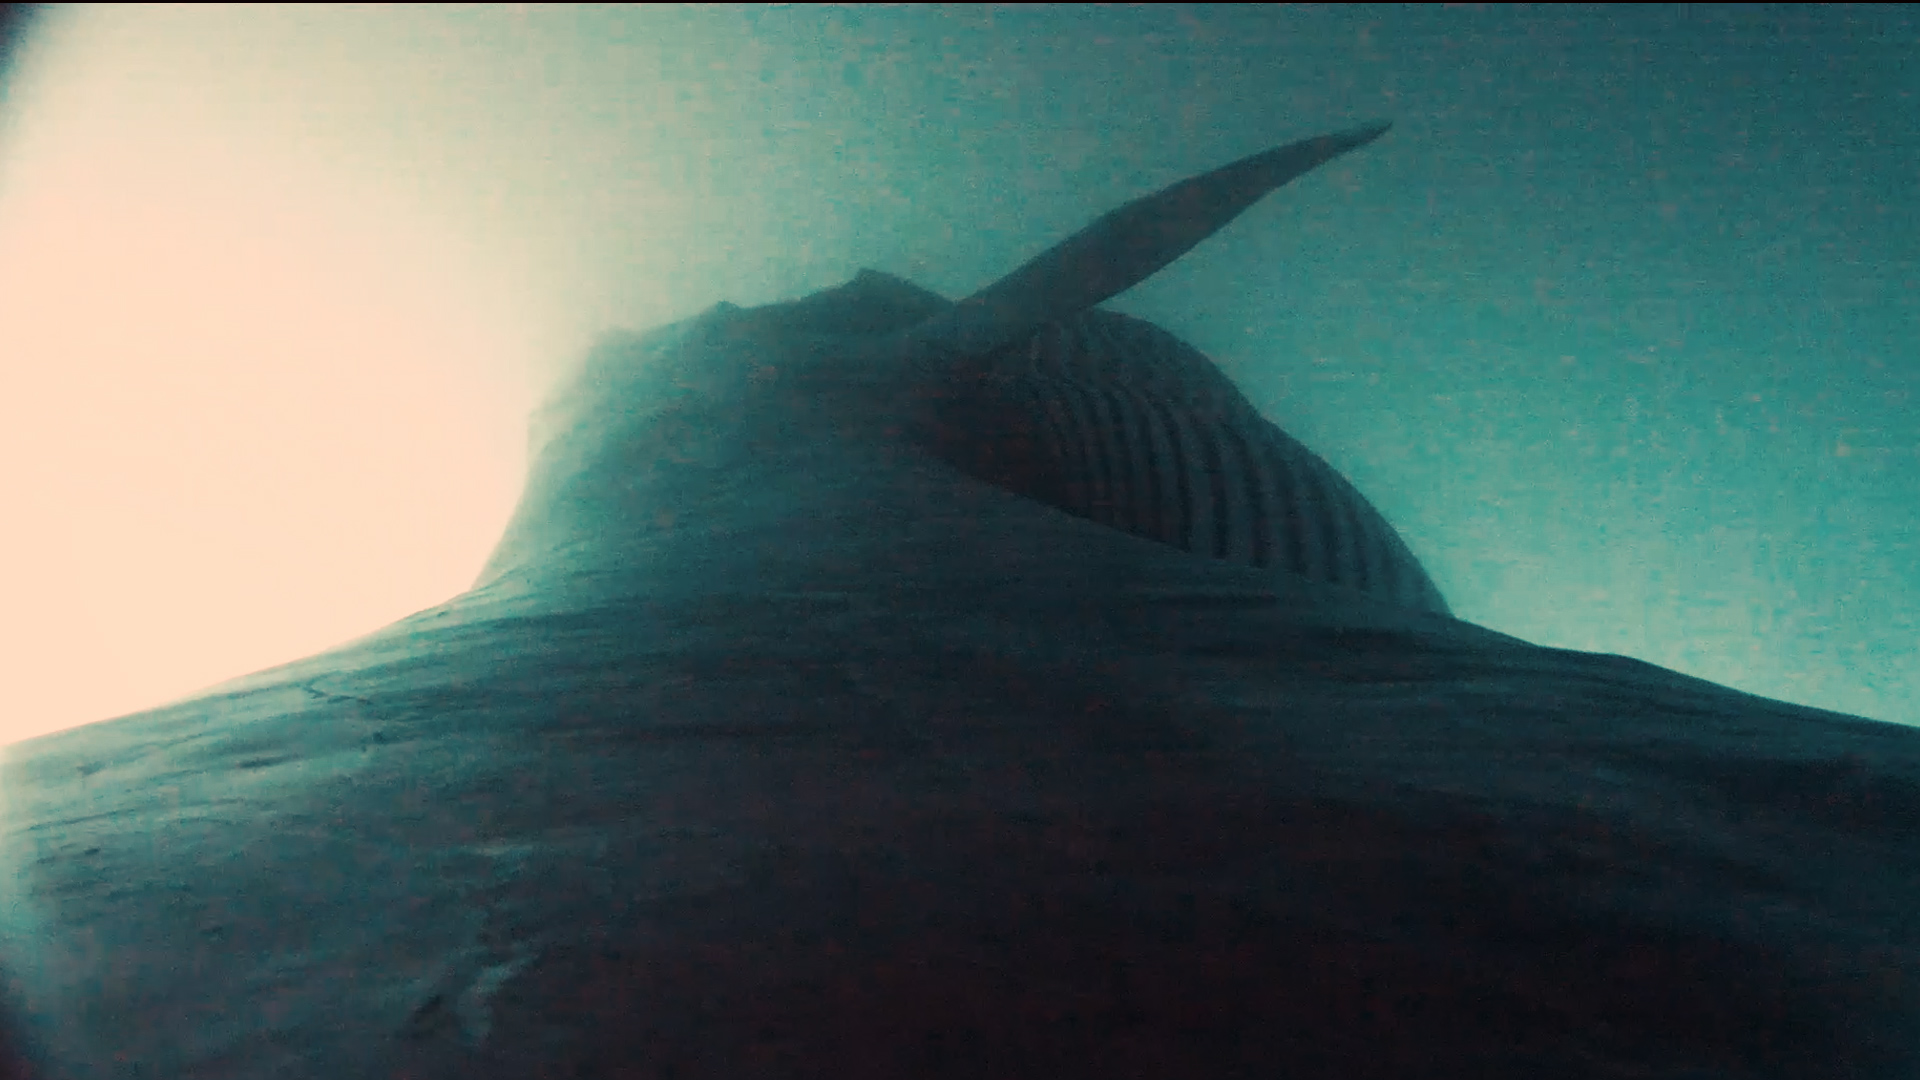 Image vidéo issue de la balise qui montre l'animal sous la mer depuis son dos